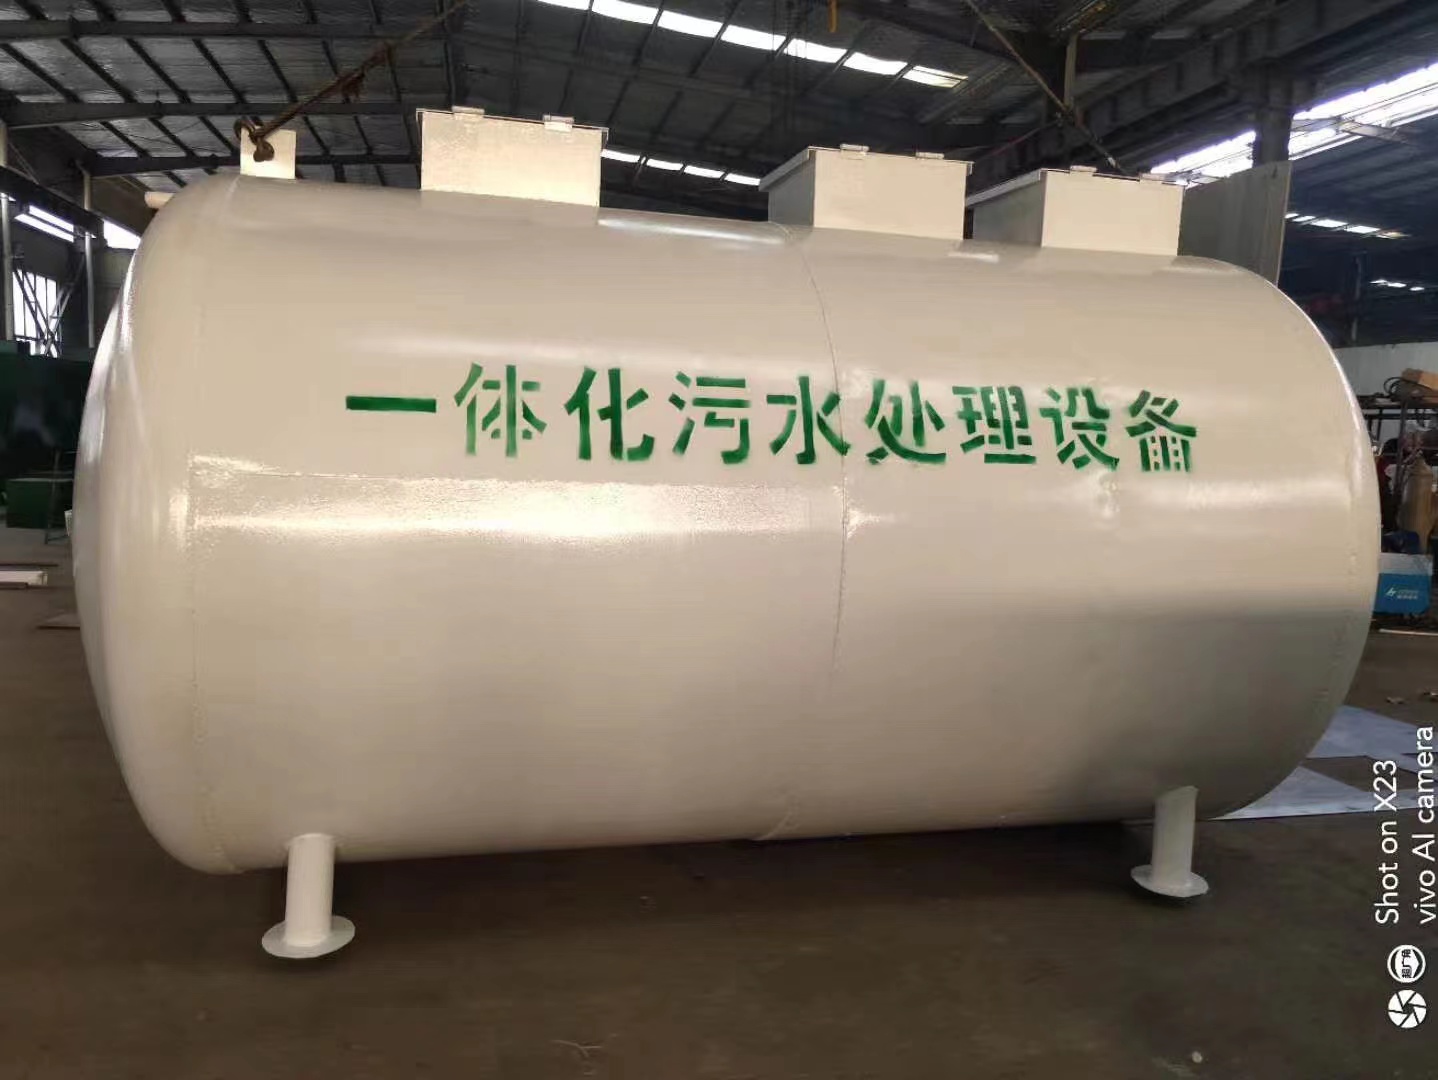 黑龙江大兴安岭养殖污水处理设备生产厂家